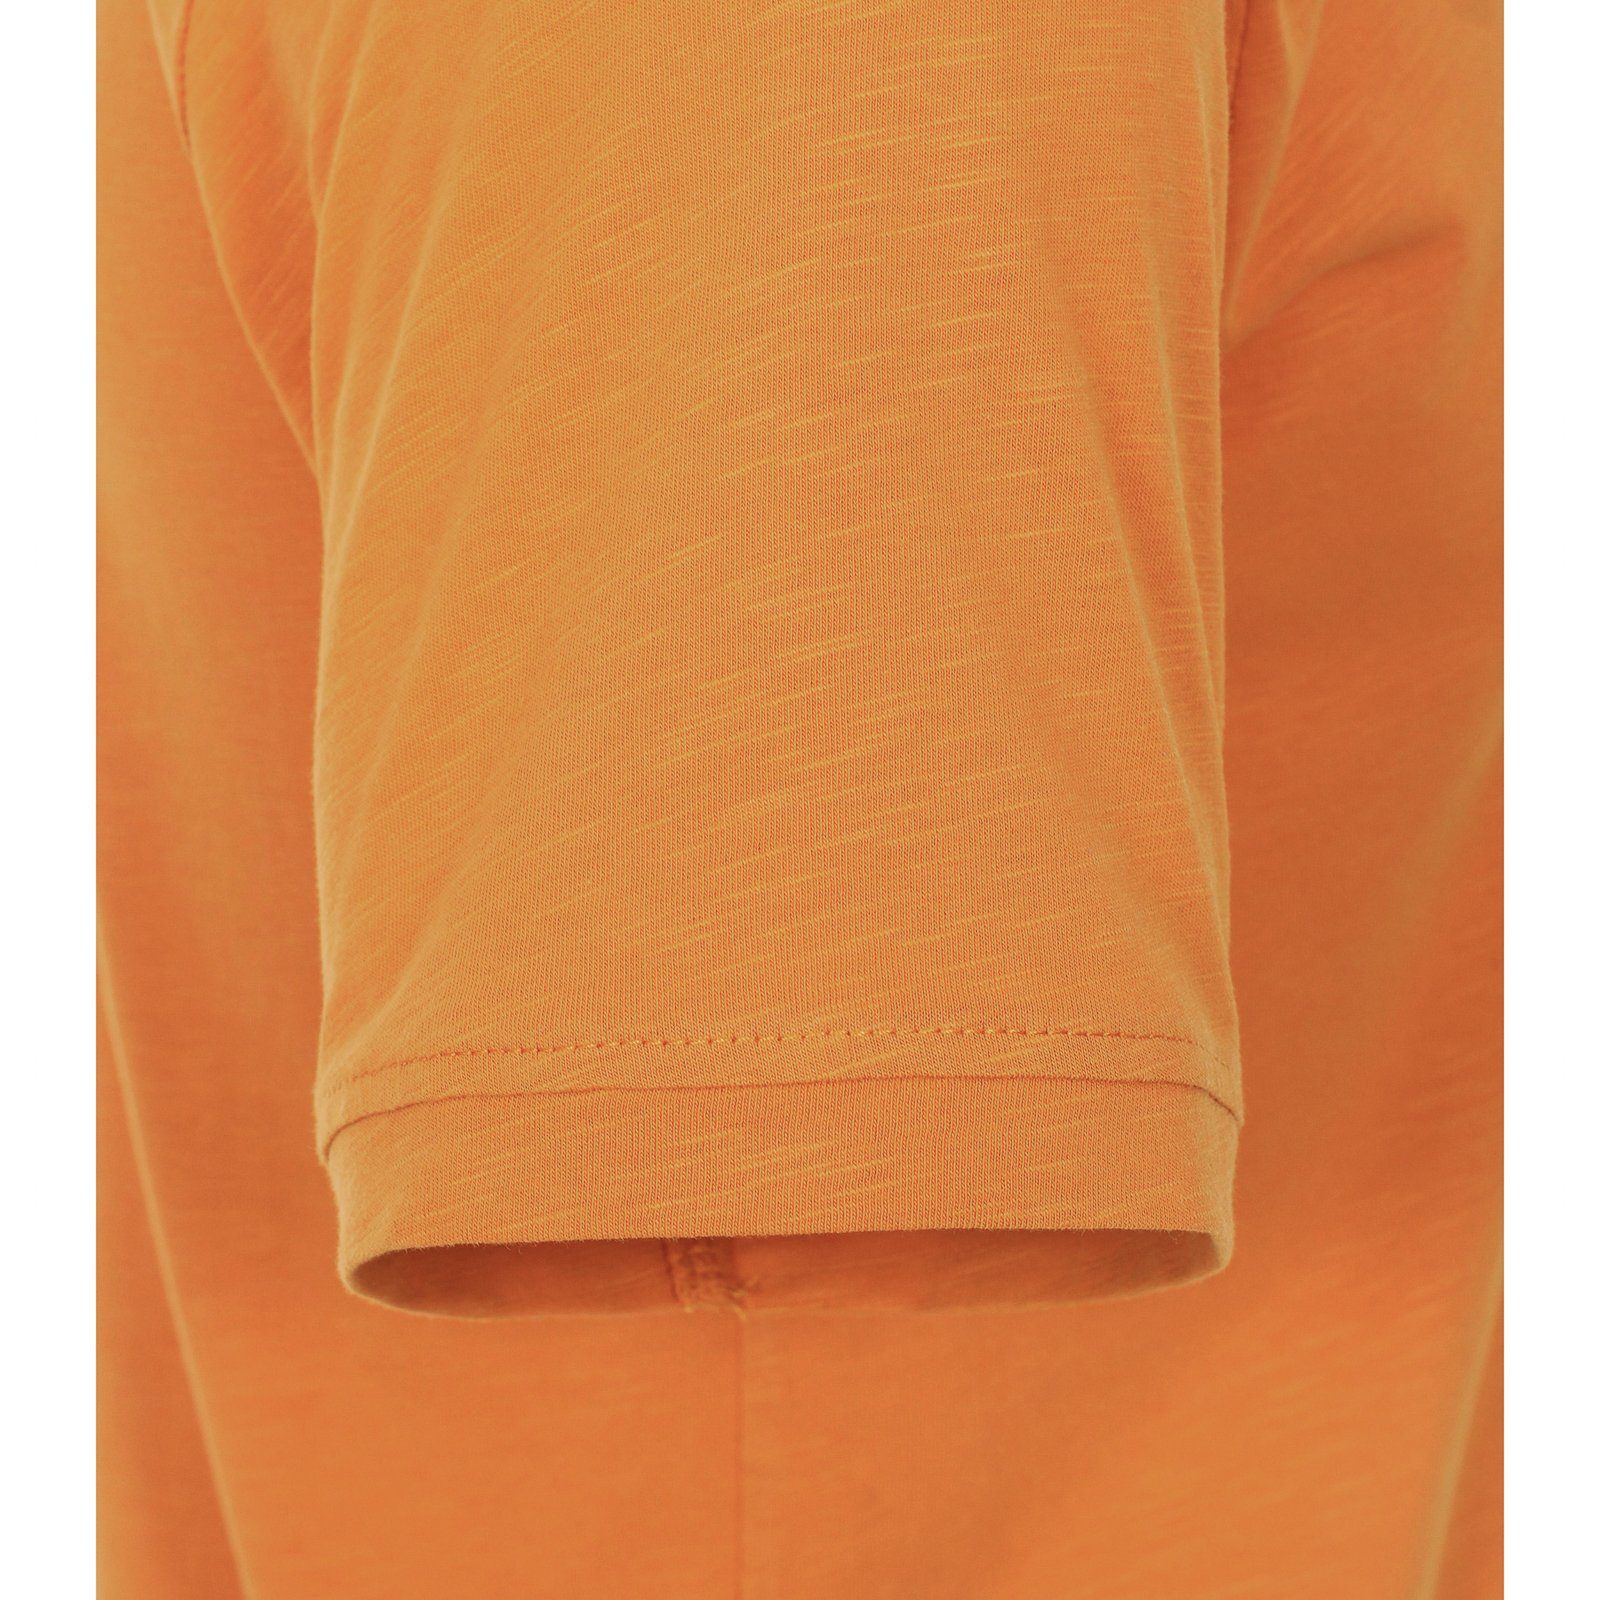 CASAMODA Herren Henley CasaModa orange Größen modisch Große Rundhalsshirt T-Shirt